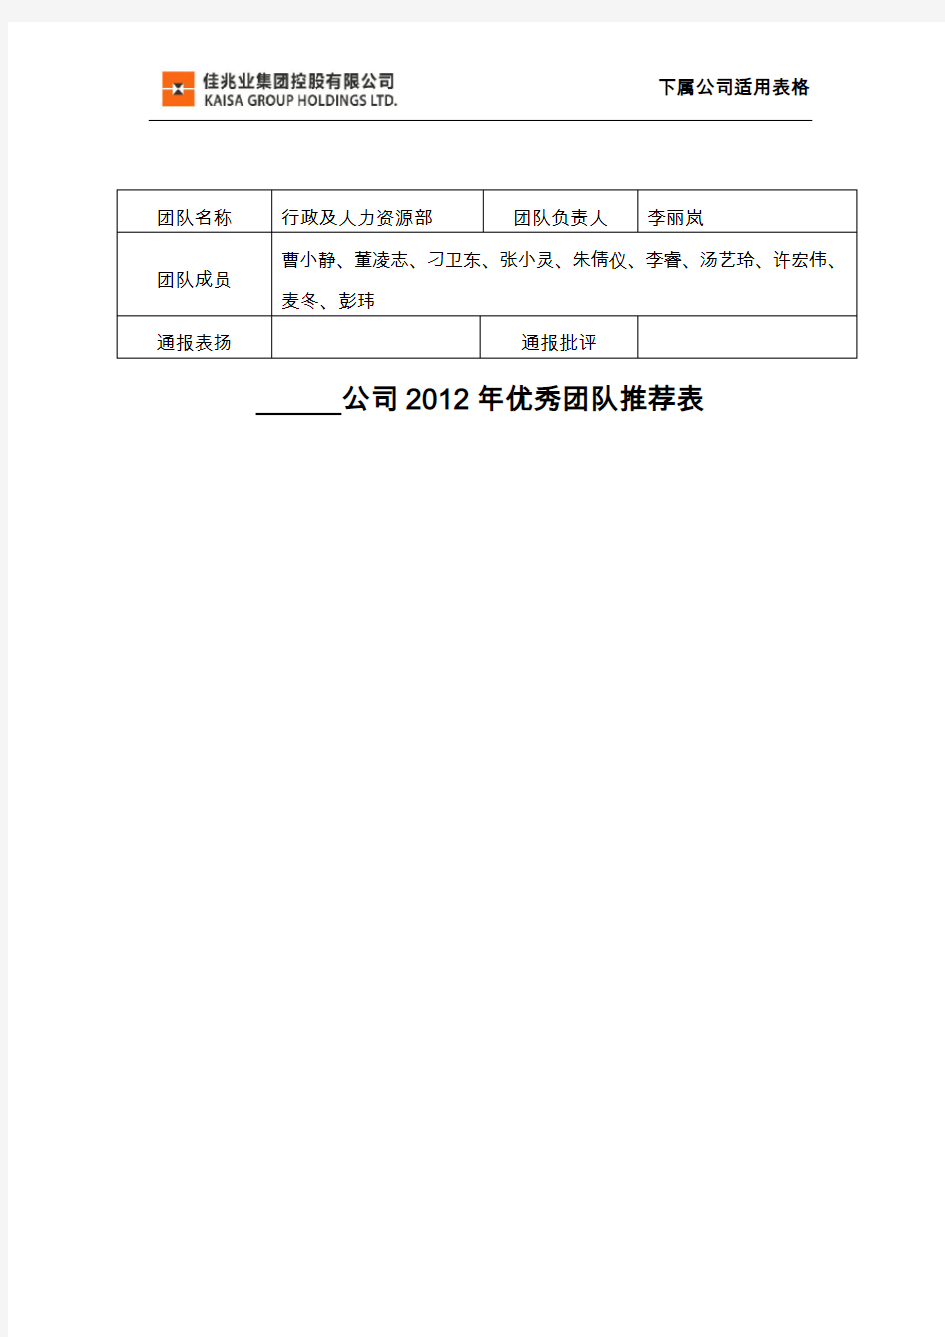 《xx公司2012年优秀团队推荐表》